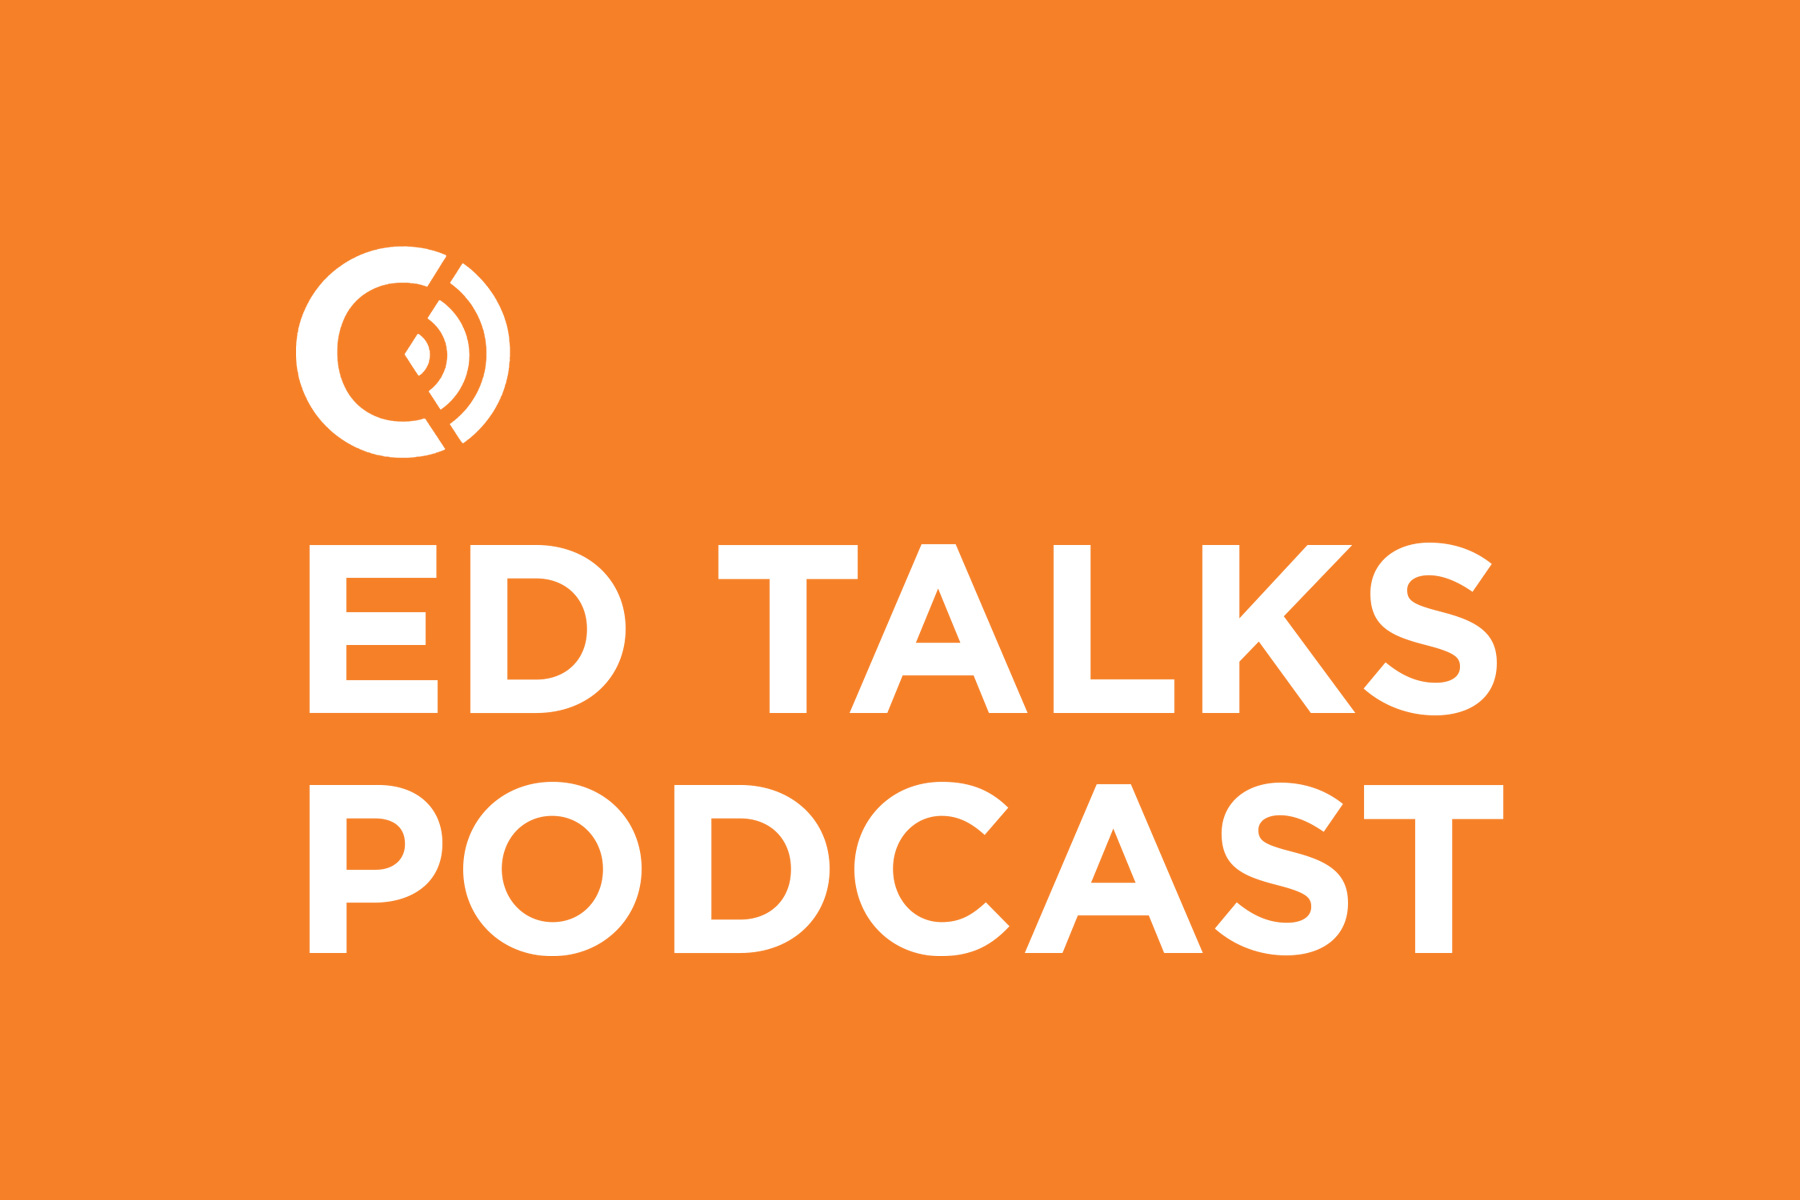 Spoken Youtube Ed Talks Podcast